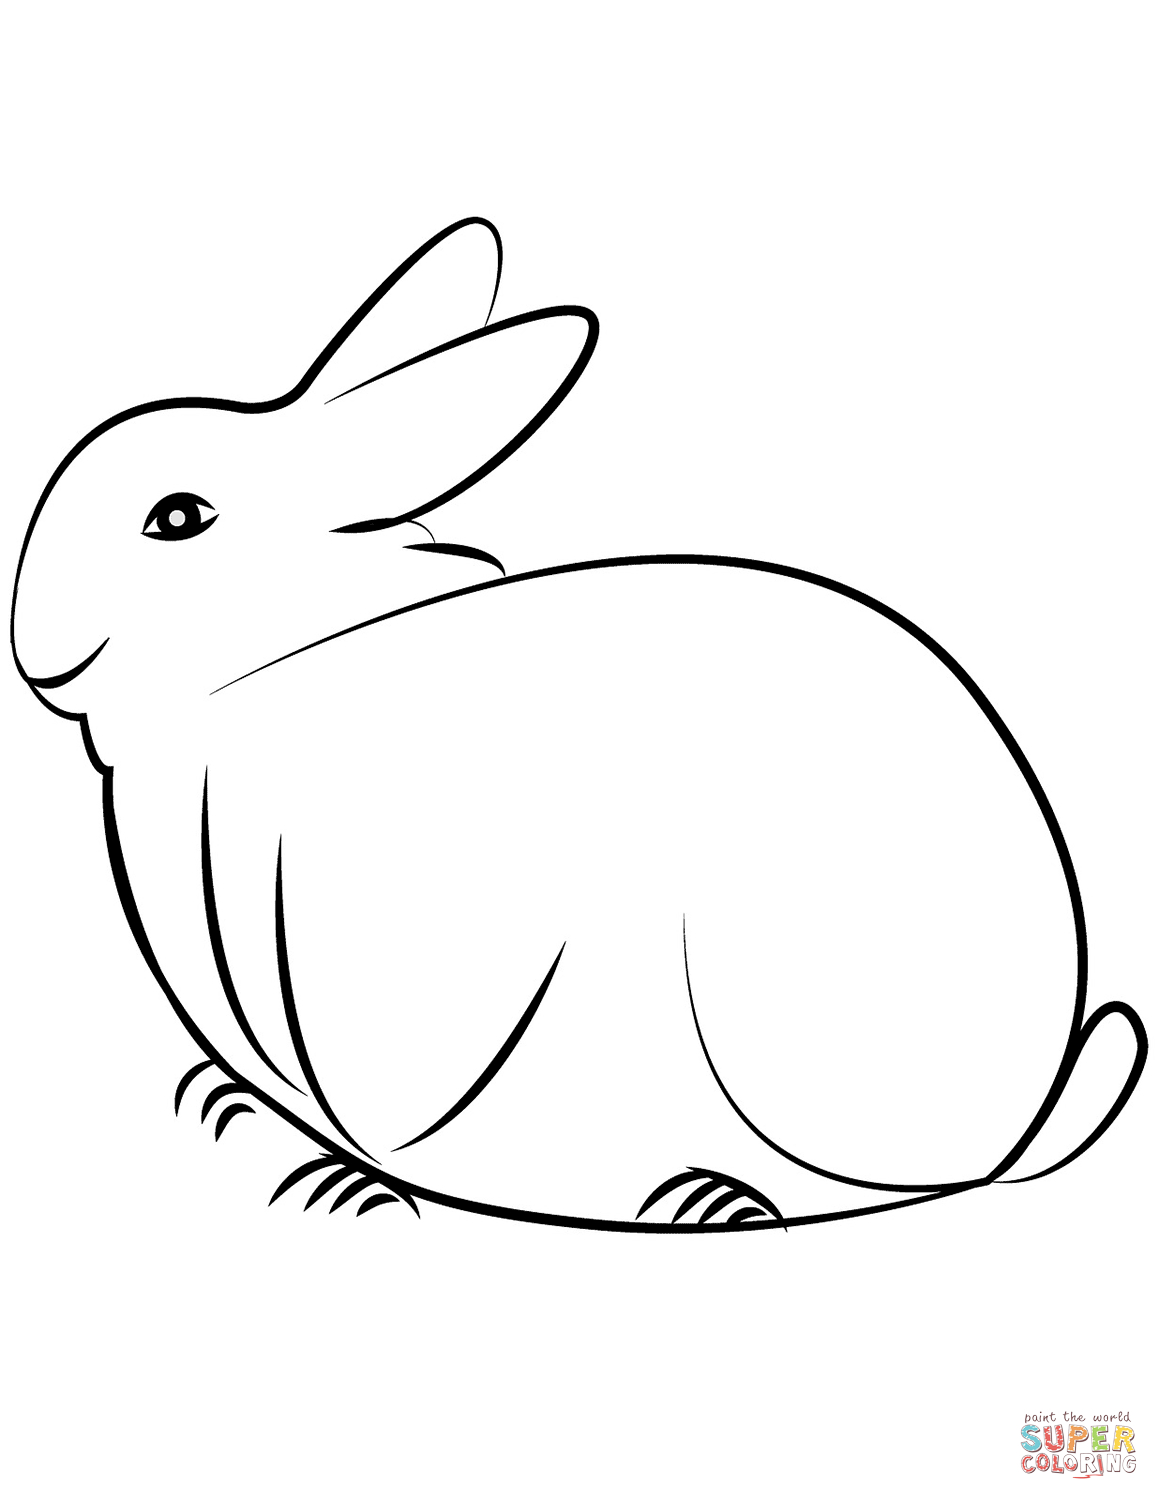 Ausmalbild: Kaninchen | Ausmalbilder Kostenlos Zum Ausdrucken bestimmt für Kaninchen Zum Ausmalen